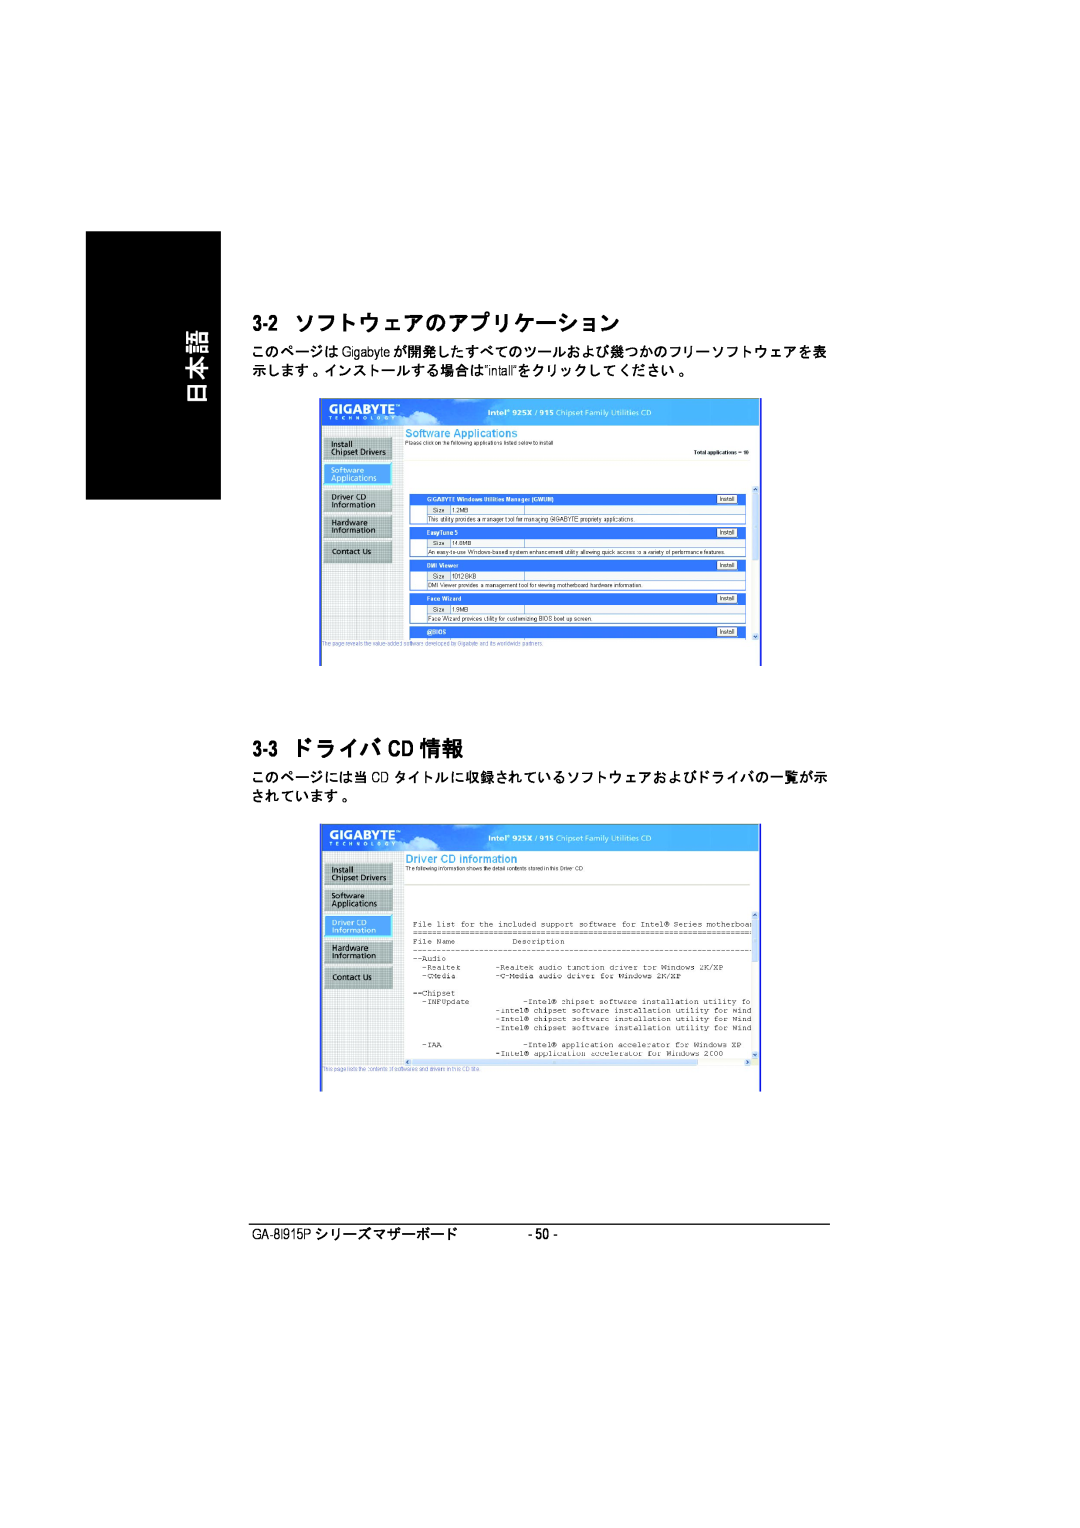 Intel GA-8I915P manual 3-2 ソ フ トウ ェアのアプリケーシ ョン, 3-3 ド ラ イバ CD 情報, このページには当 Cd タイ トルに収録されているソフ トウ ェアおよびド ラ イバの一覧が示 されています 。 